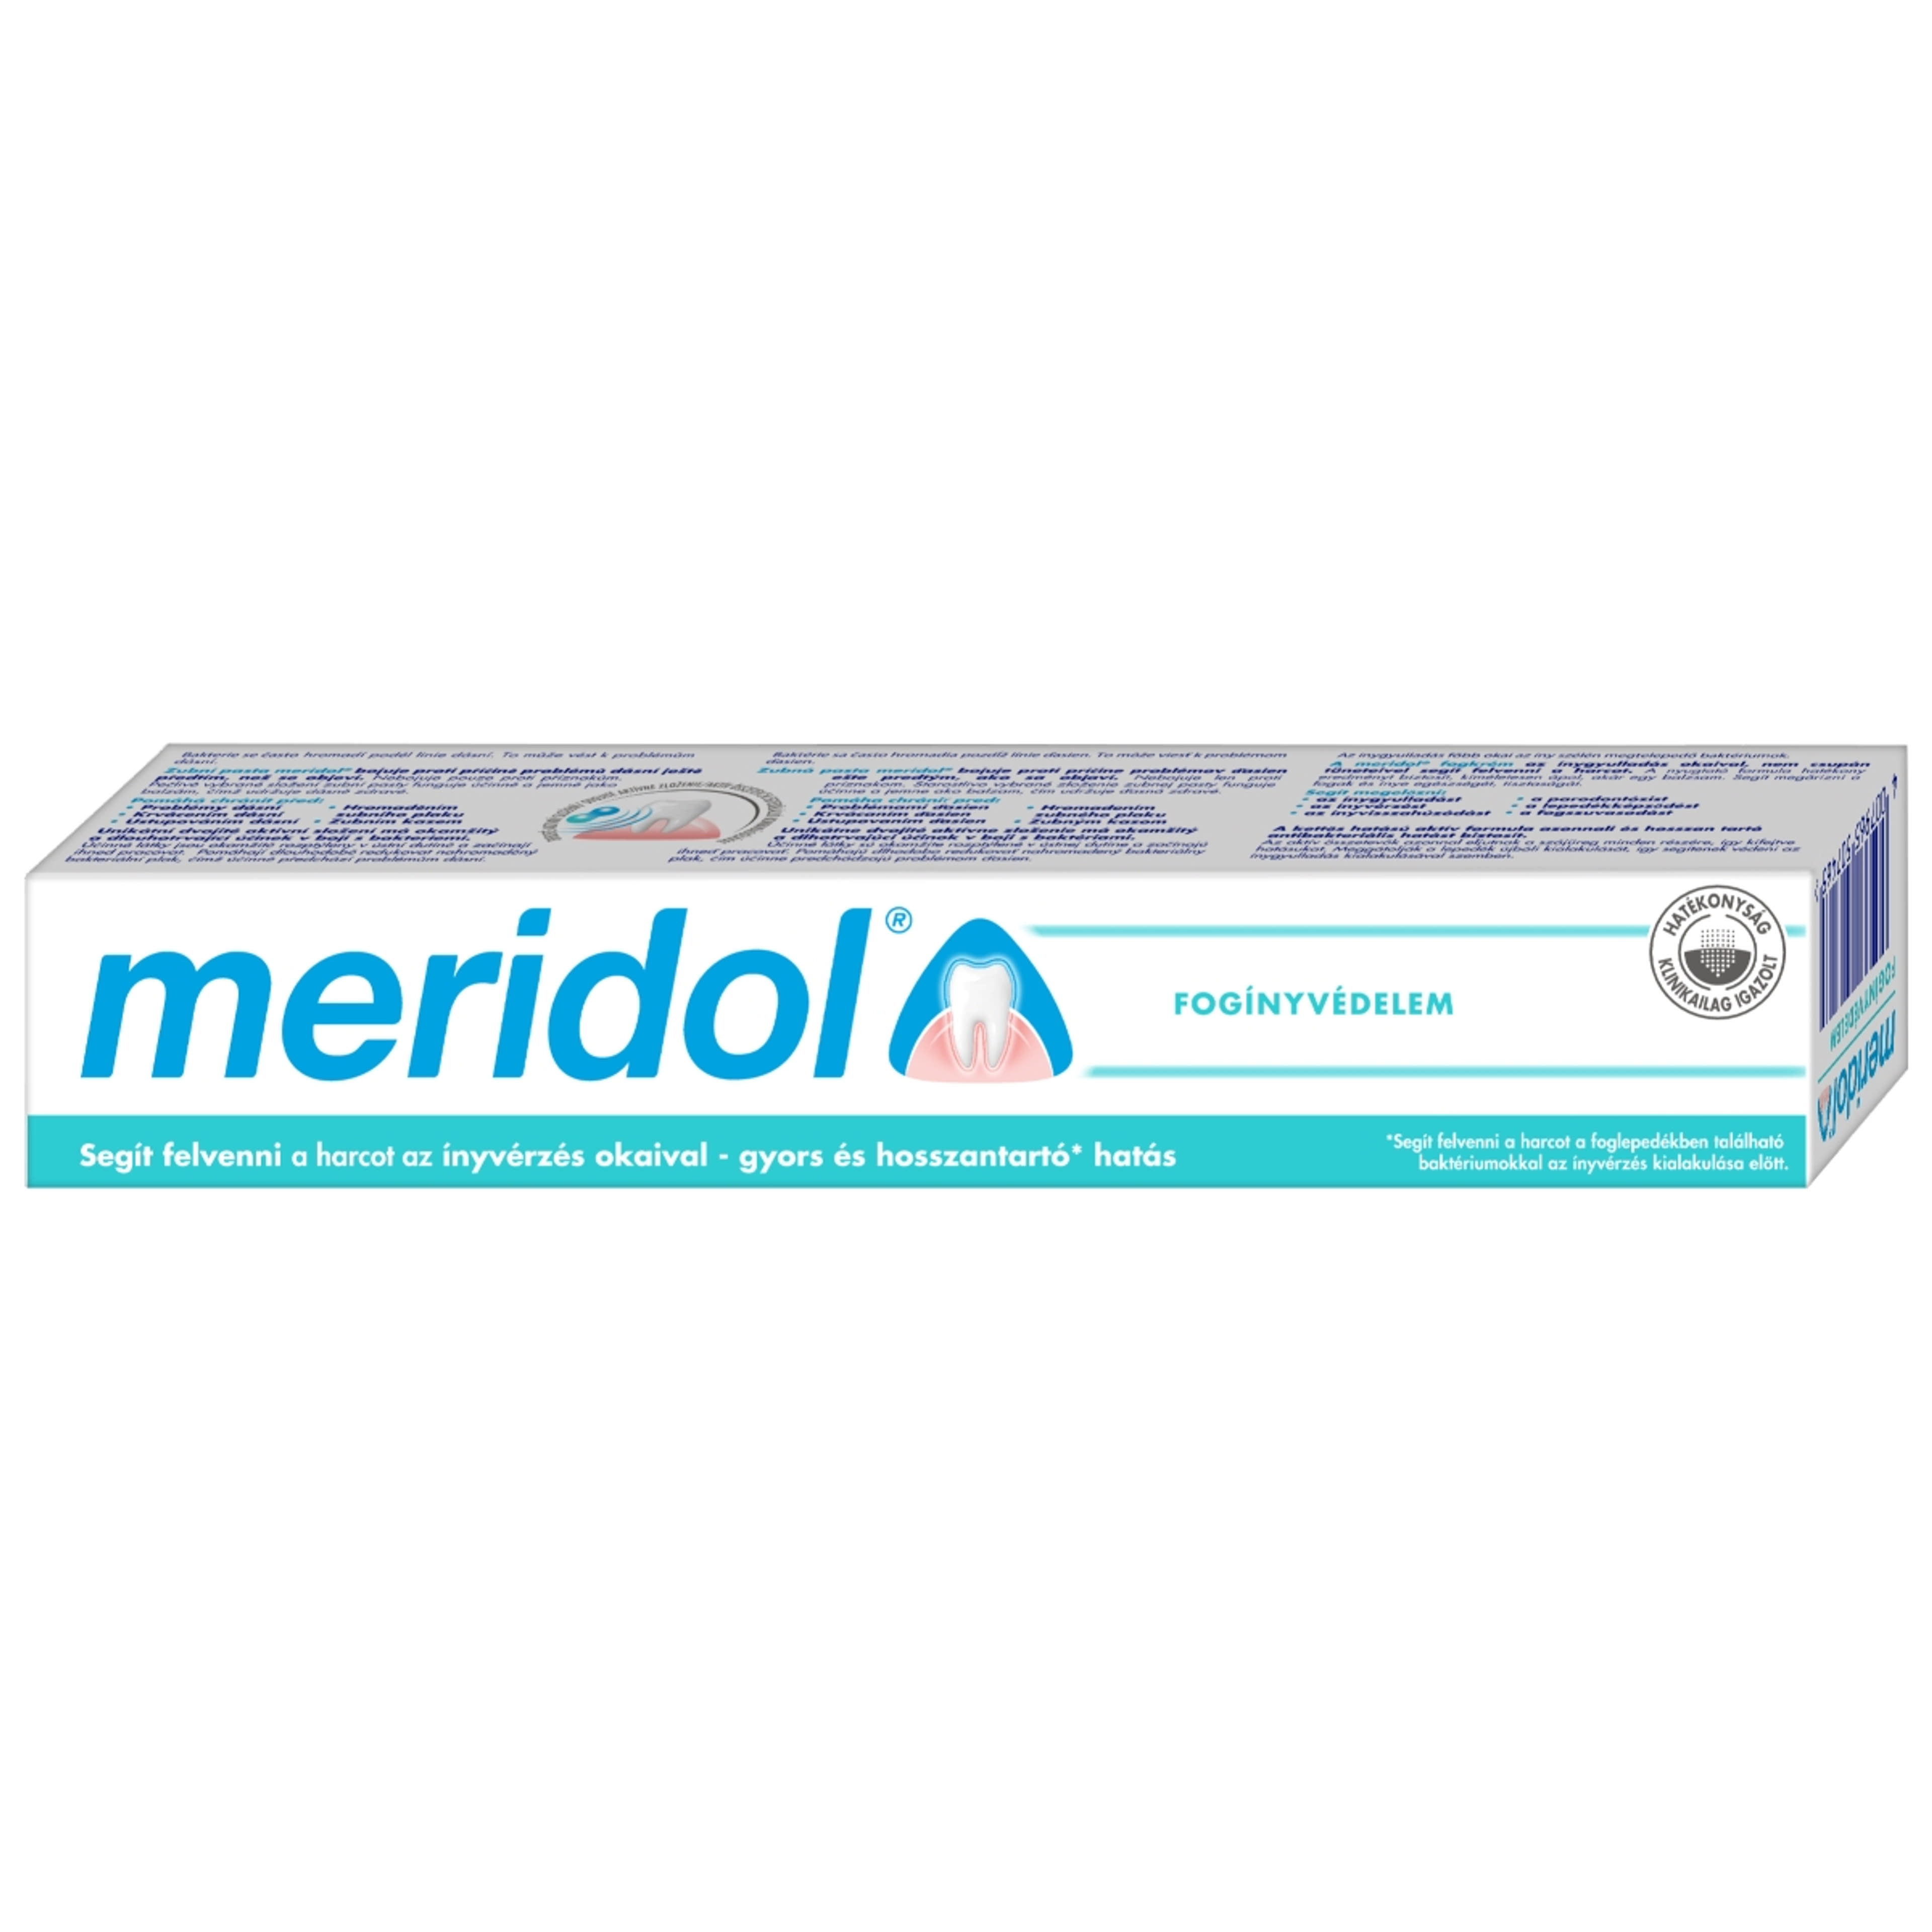 Meridol Fogínyvédelem fogkrém - 75 ml-7